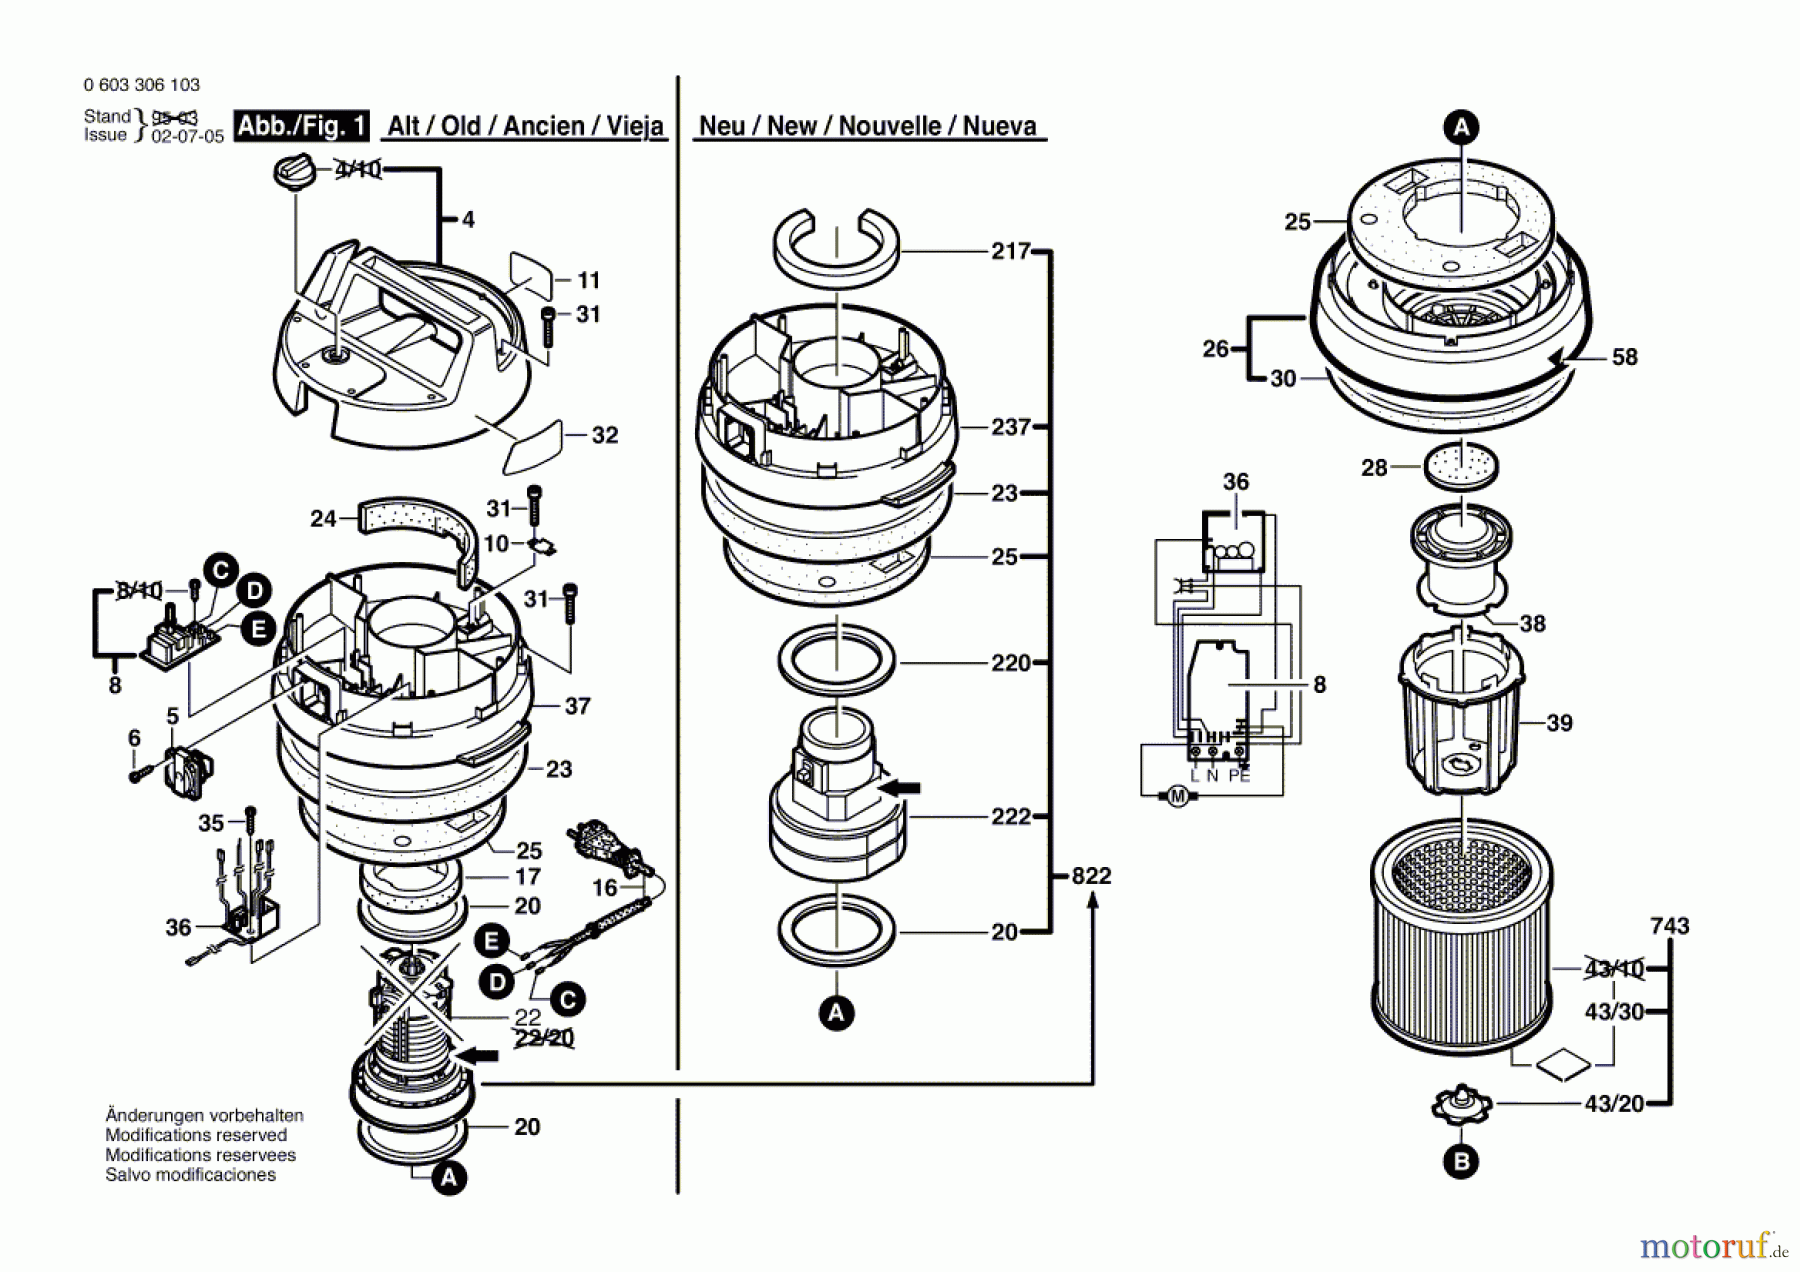  Bosch Werkzeug Hw-Allzwecksauger PAS 12-50 F Seite 1